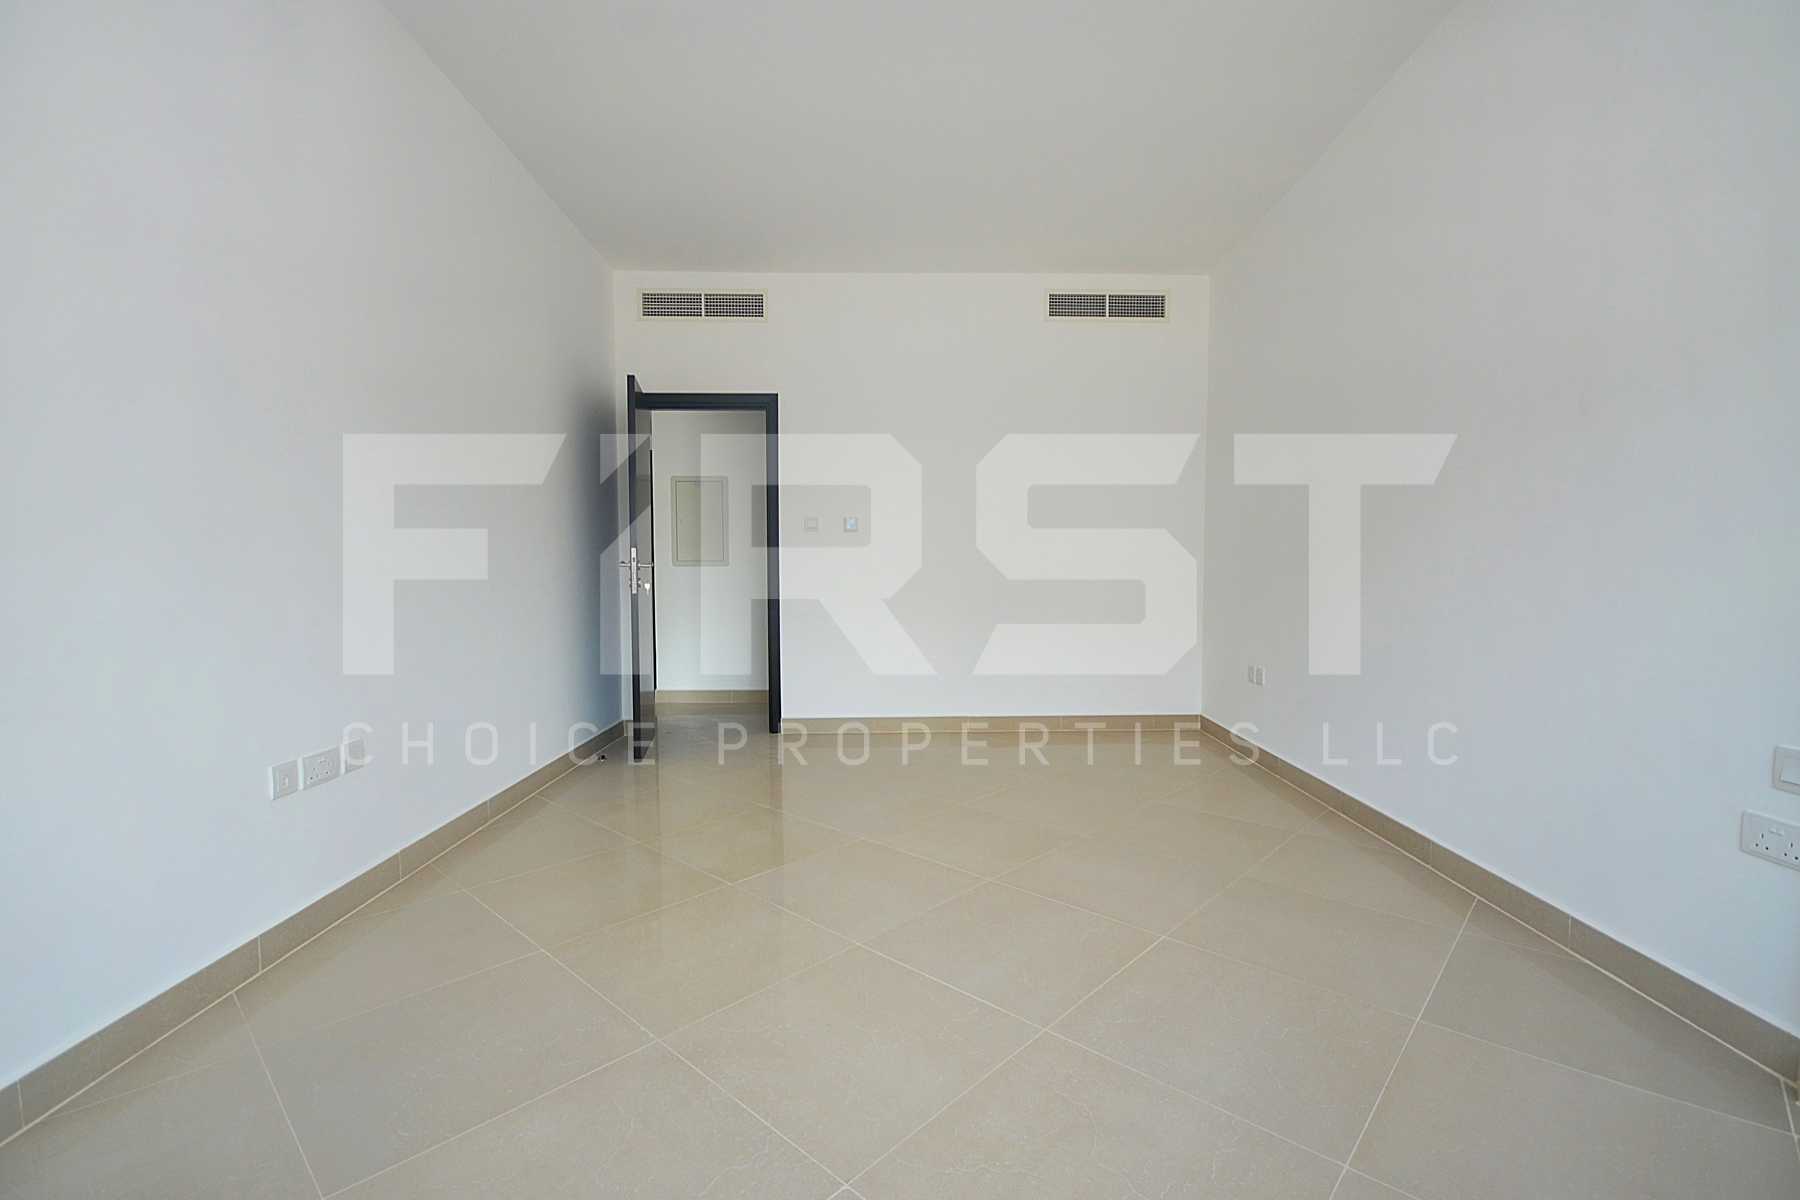 Internal Photo of 1 Bedroom Apartment Type C in Al Reef Downtown Al Reef AUH UAE (9).jpg